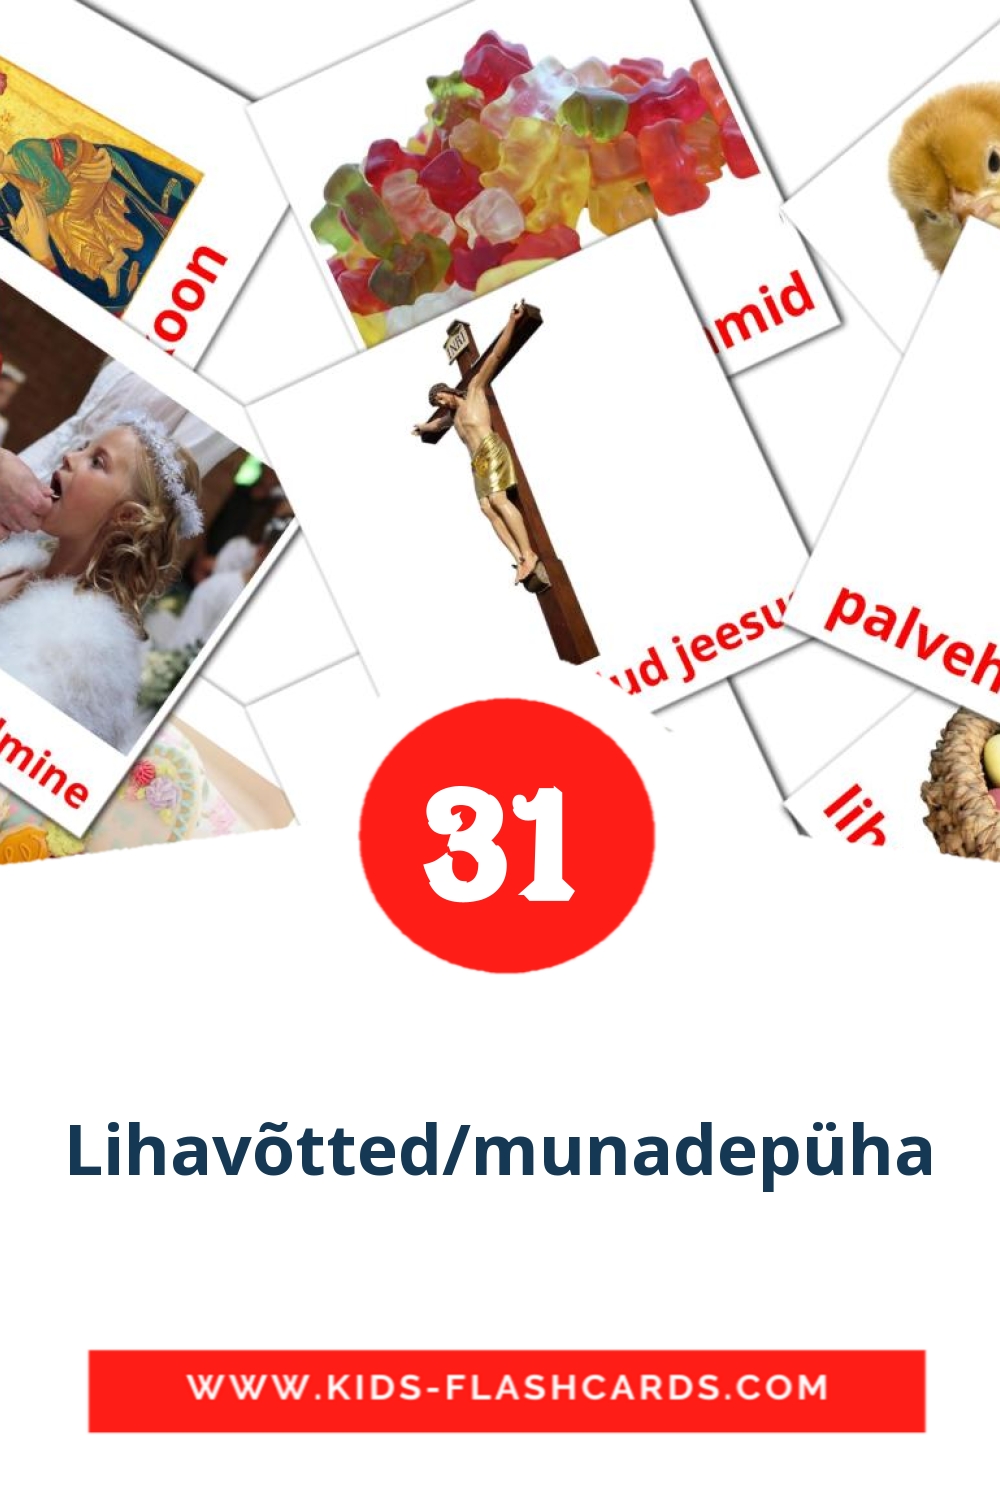 31 tarjetas didacticas de Lihavõtted/munadepüha para el jardín de infancia en estonio